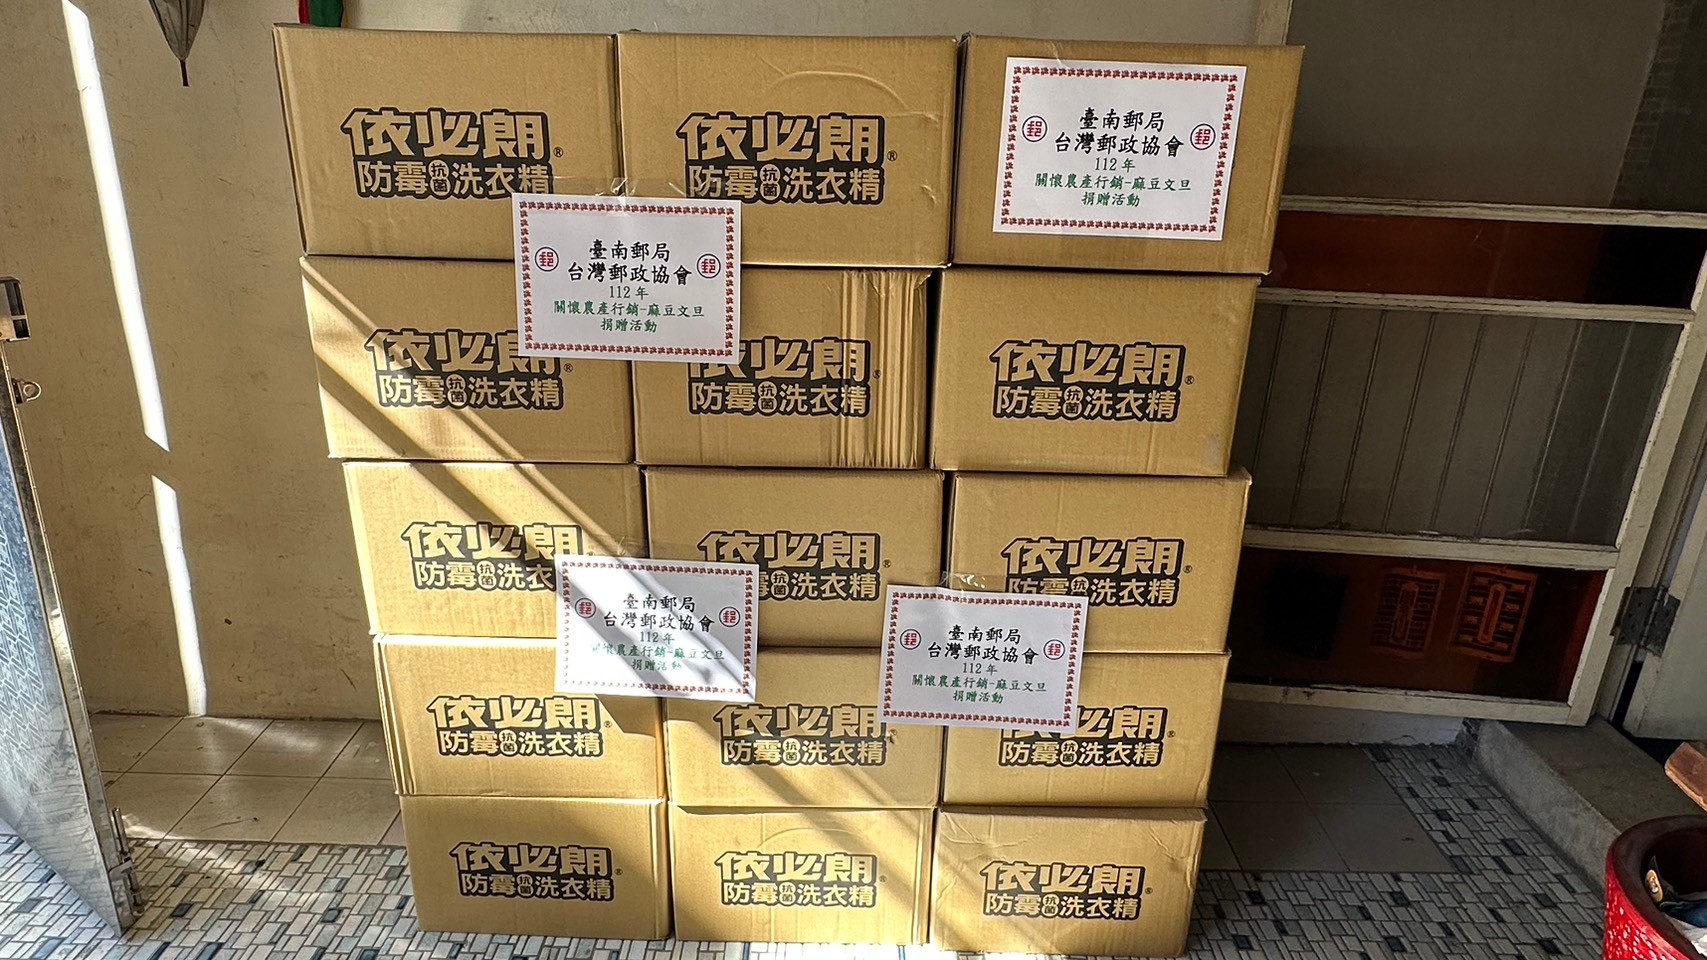 臺南郵局挺小農 行銷文旦捐贈物資關懷原住民永續發展協會